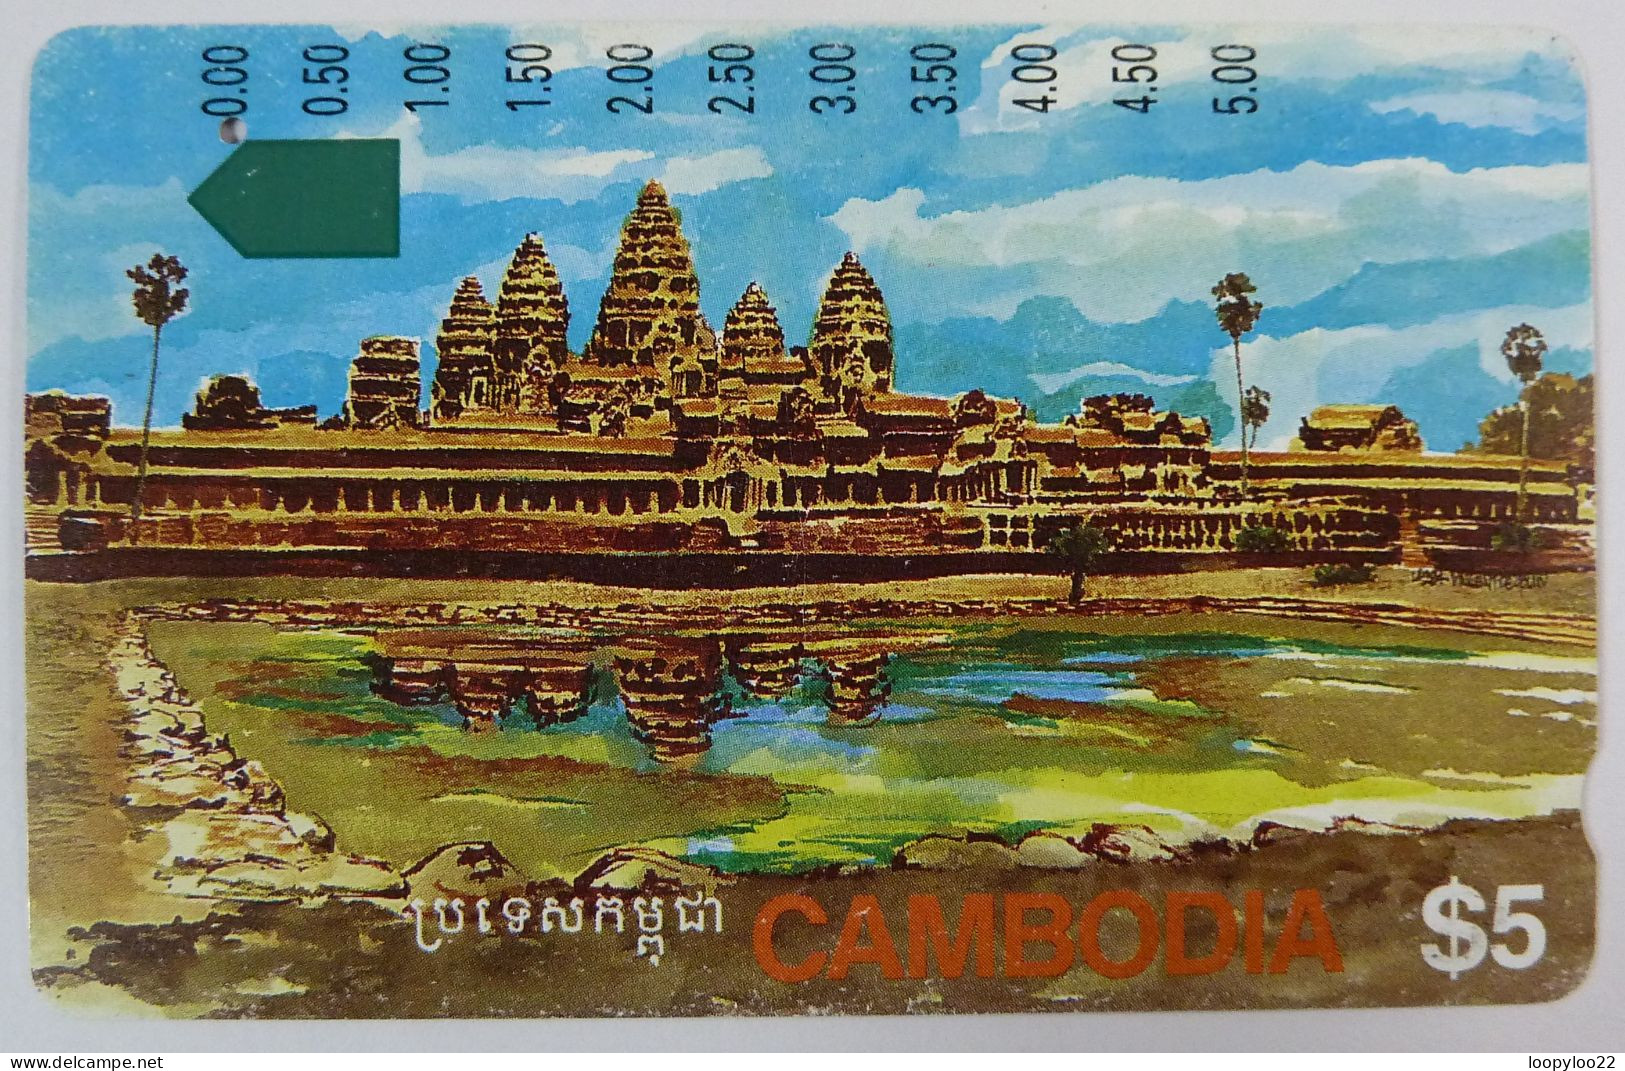 CAMBODIA - Anritsu - Telstra - ANGKOR RUINS - Smaller $5 - Used - Cambodia